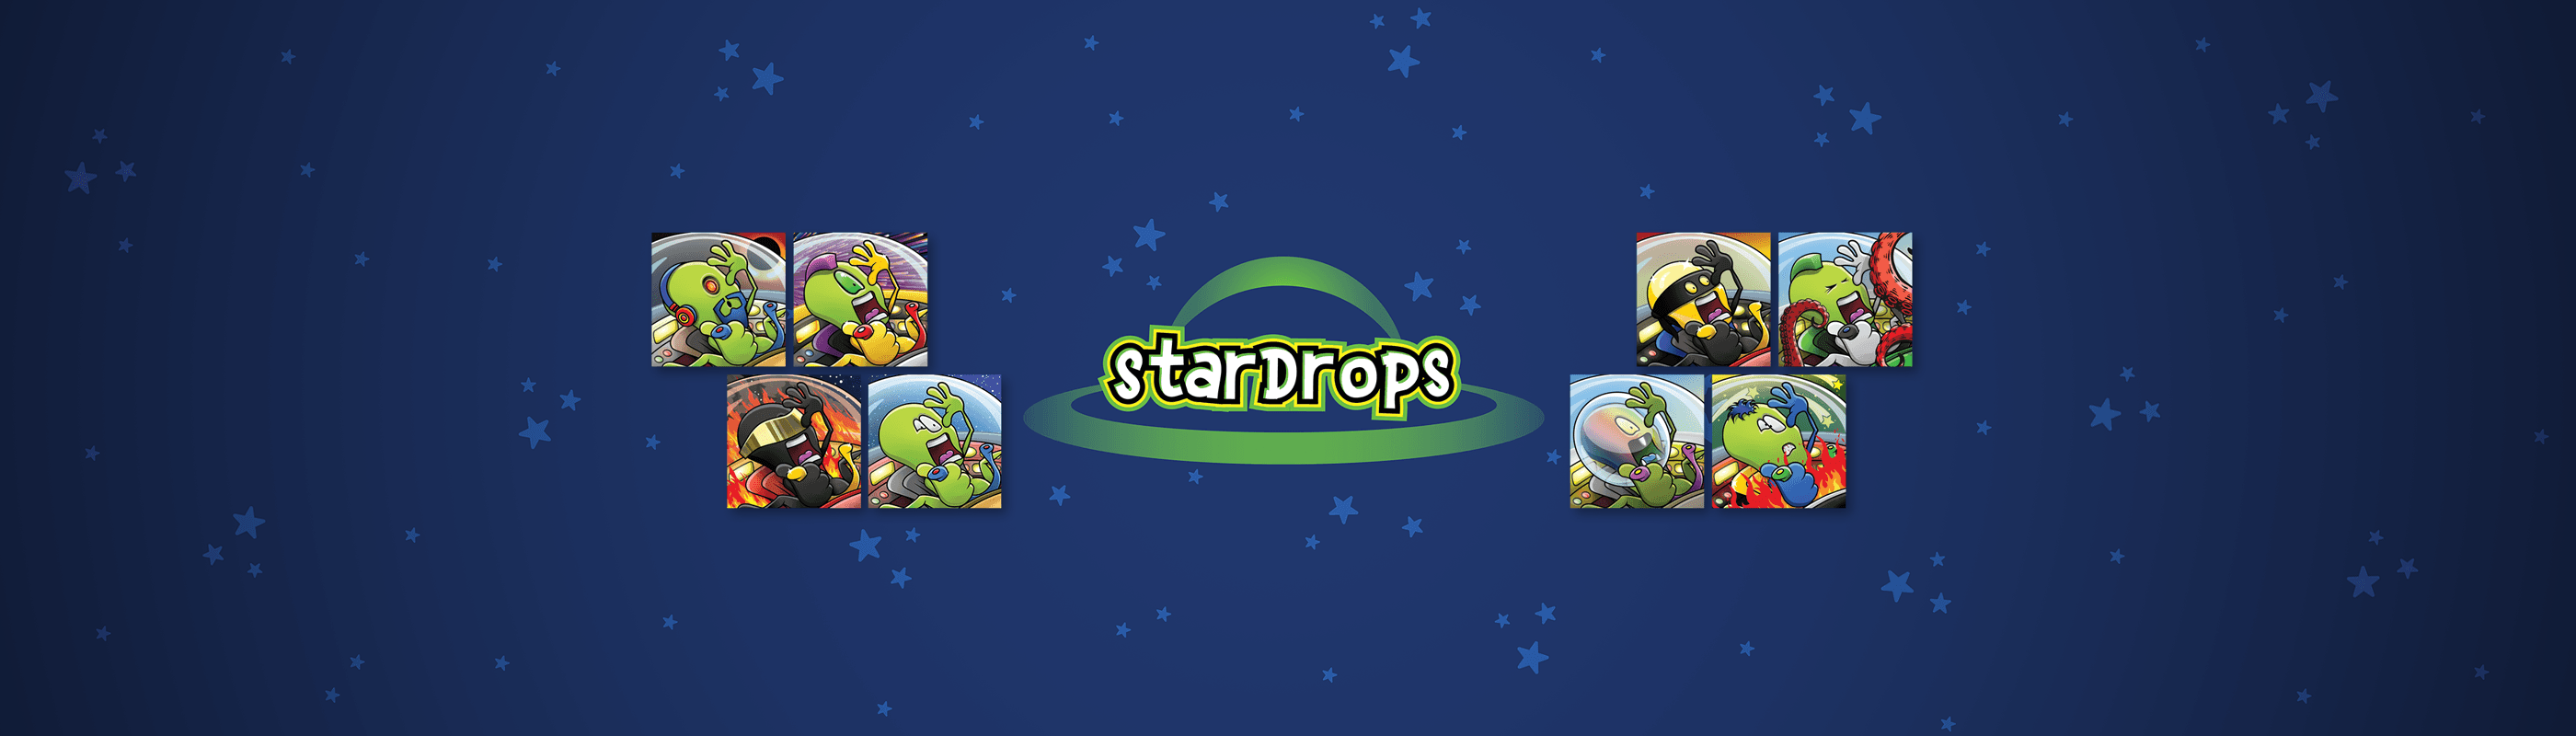 Stardrops banner